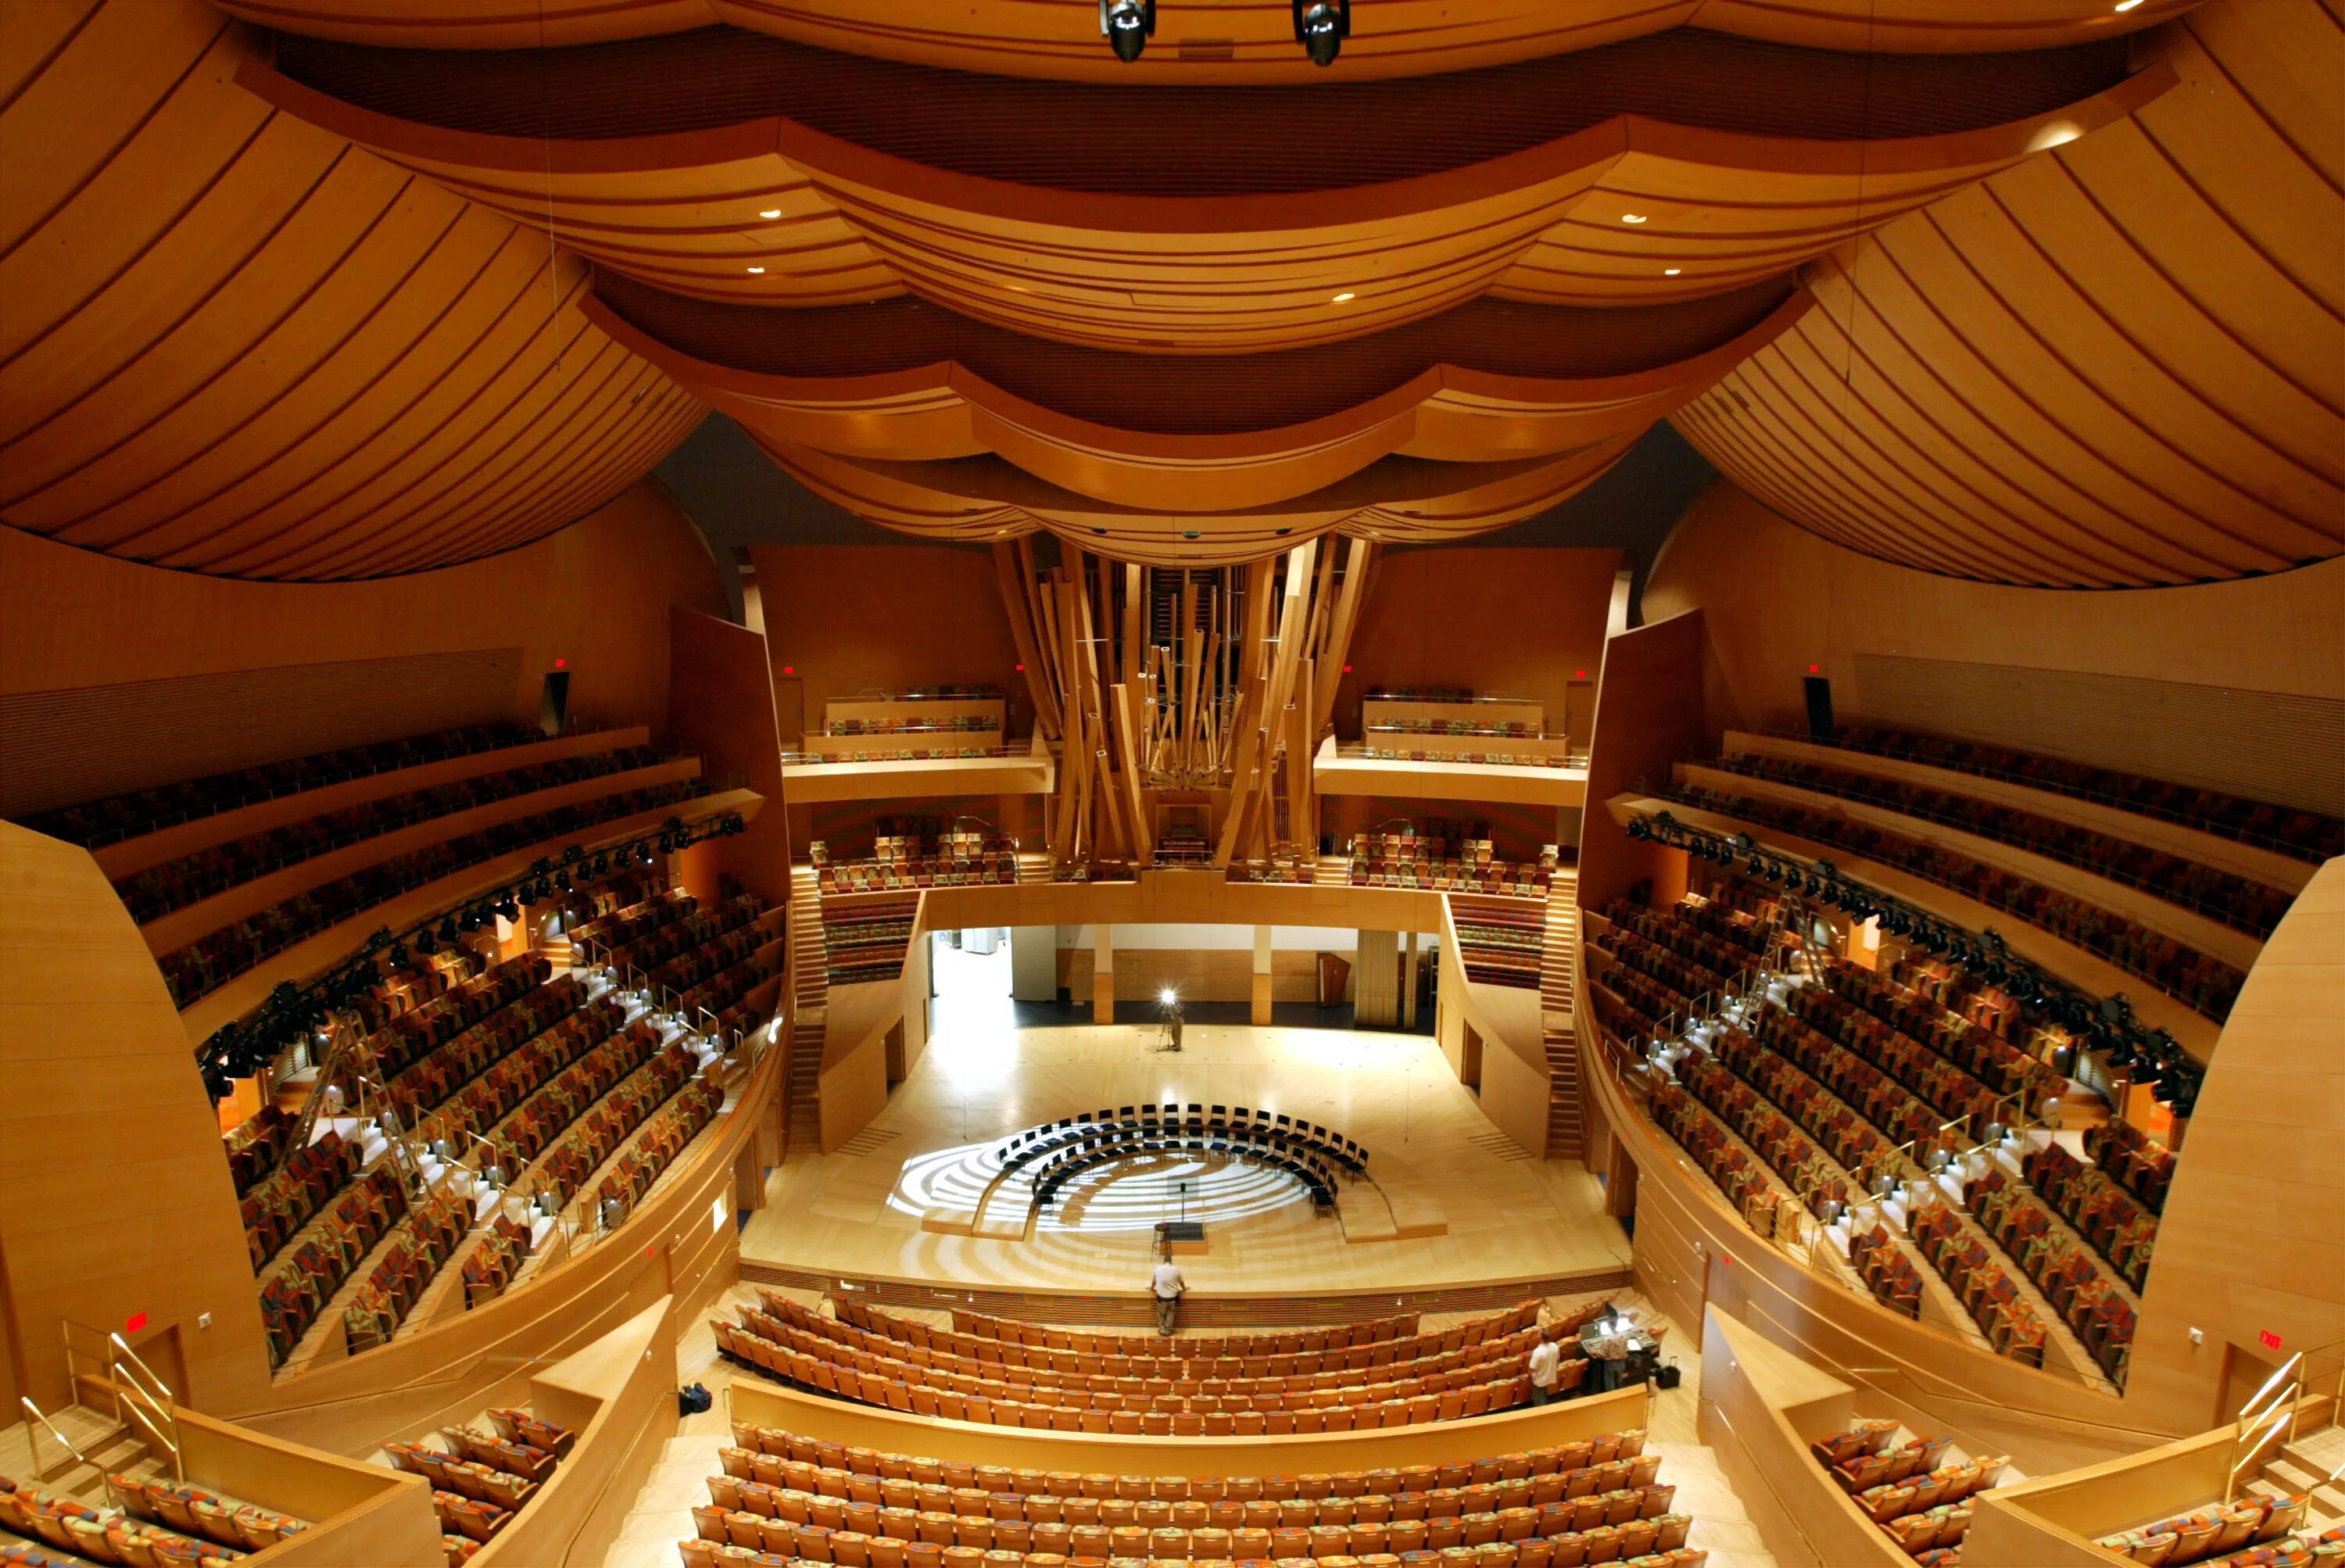 Концертный зал диснея залы. Концертный зал Уолта Диснея в Лос-Анджелесе, США. Walt Disney концертный зал (Лос Анджелес). Фрэнк Гери концертный зал Уолта Диснея. Зал Уолта Диснея (Лос-Анджелес, США, 2003 Г.).